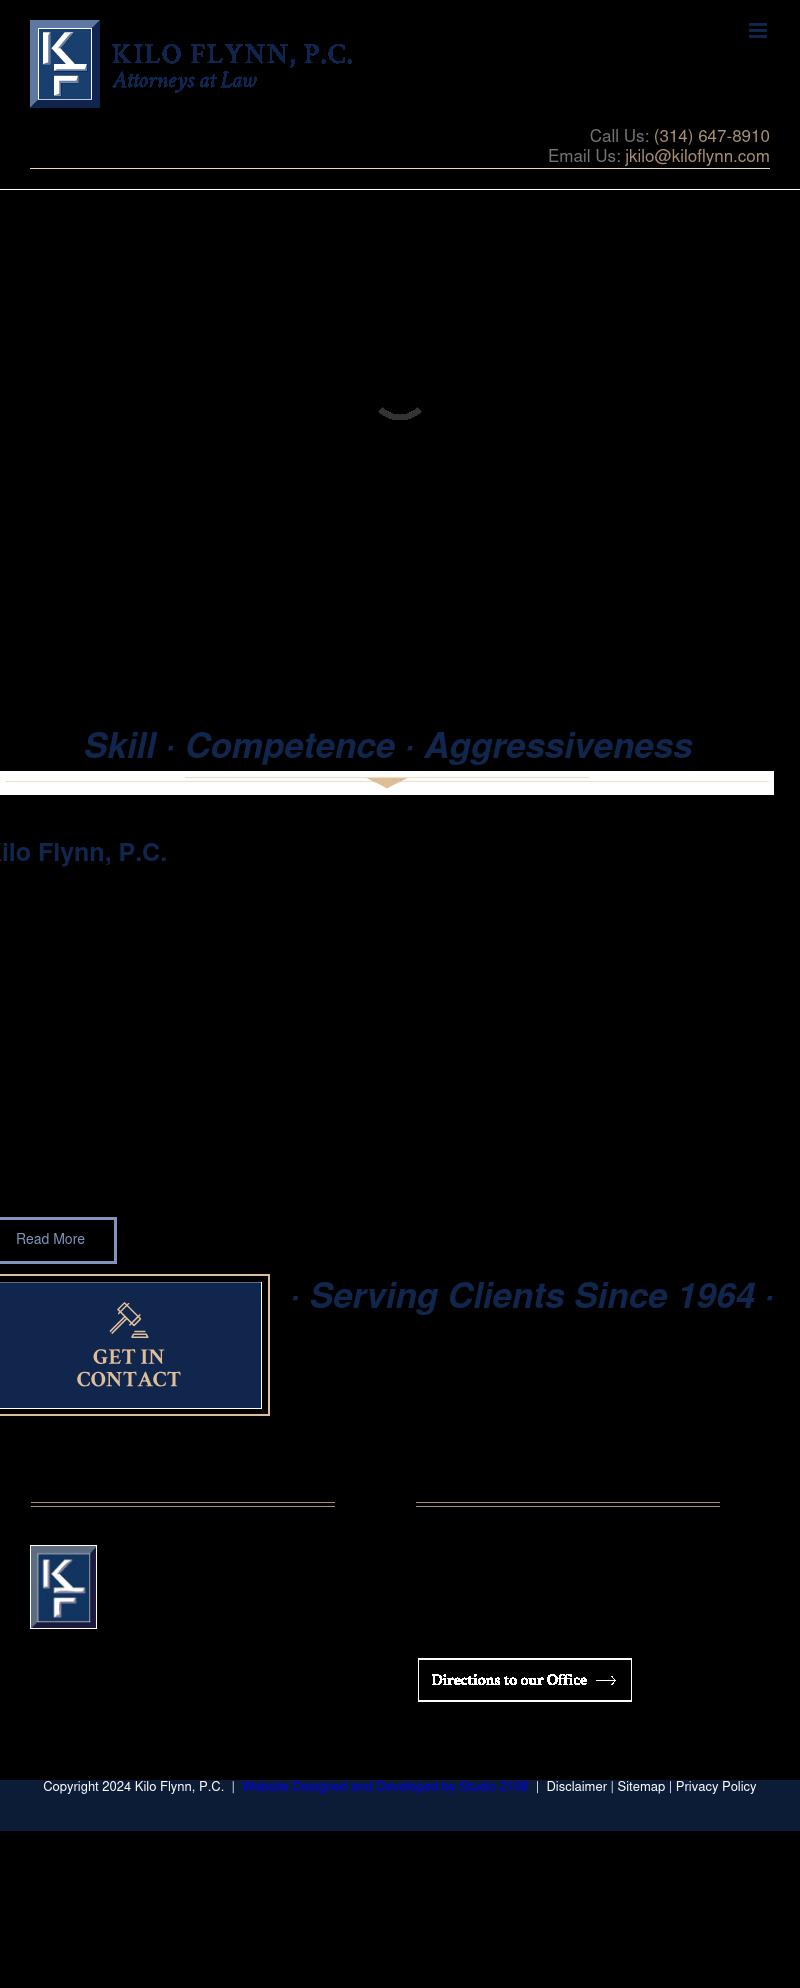 Kilo Flynn Billingsley Trame & Brown PC - Saint Louis MO Lawyers